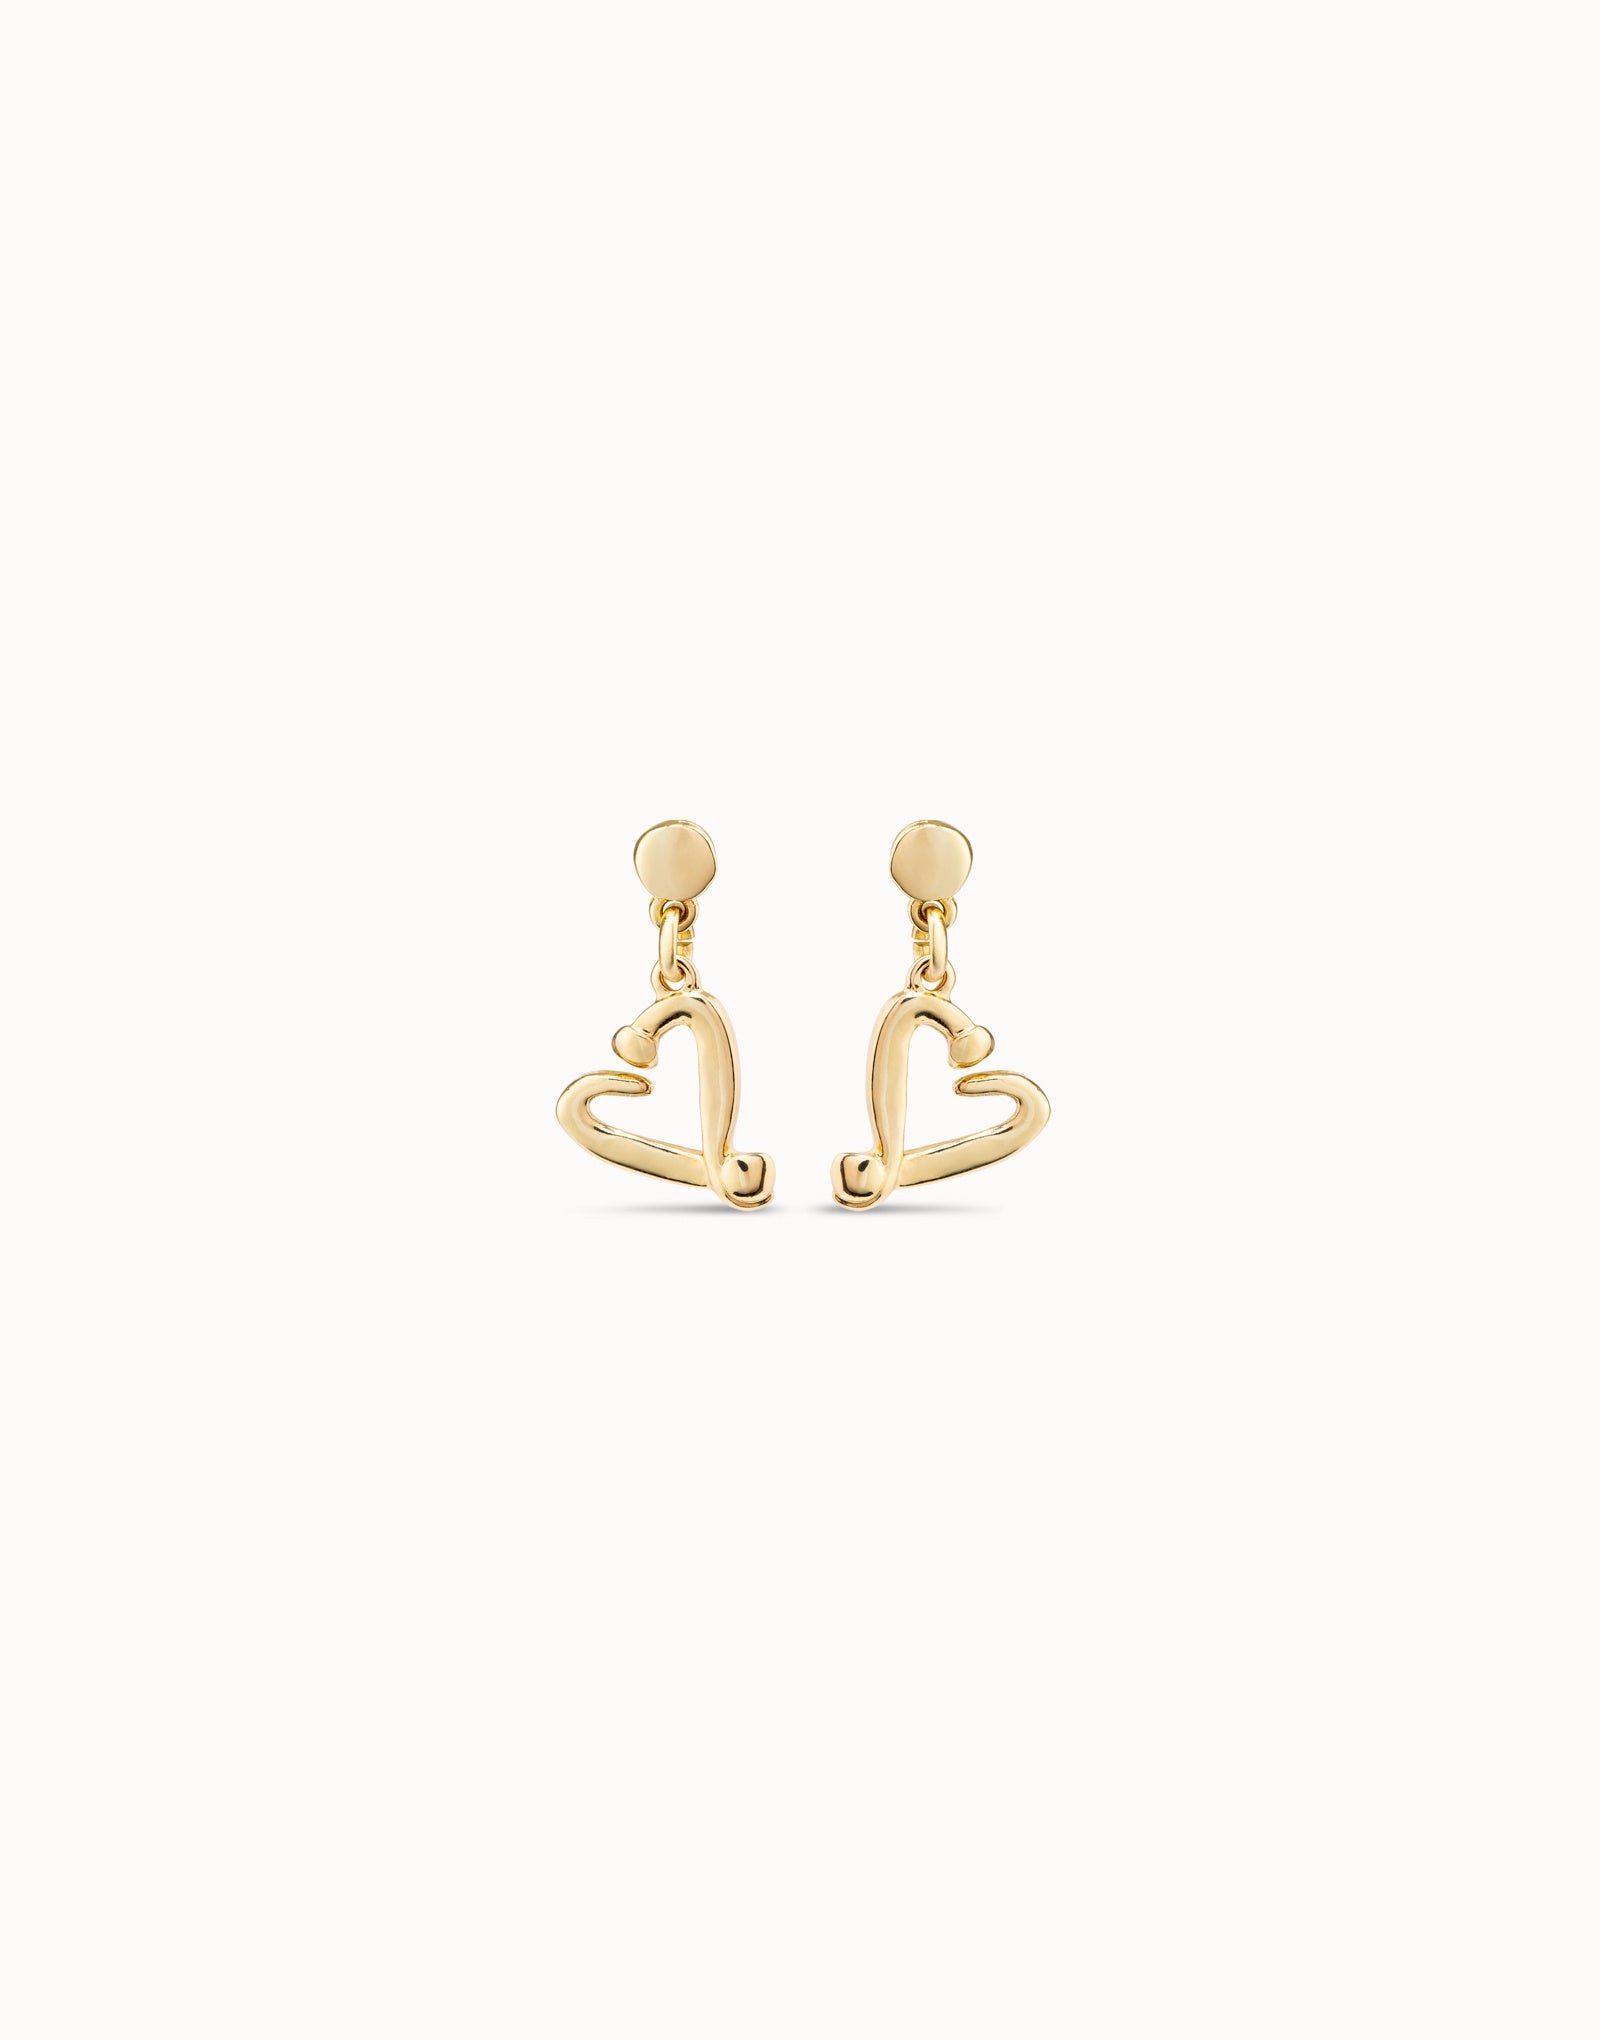 One Love Gold Earrings